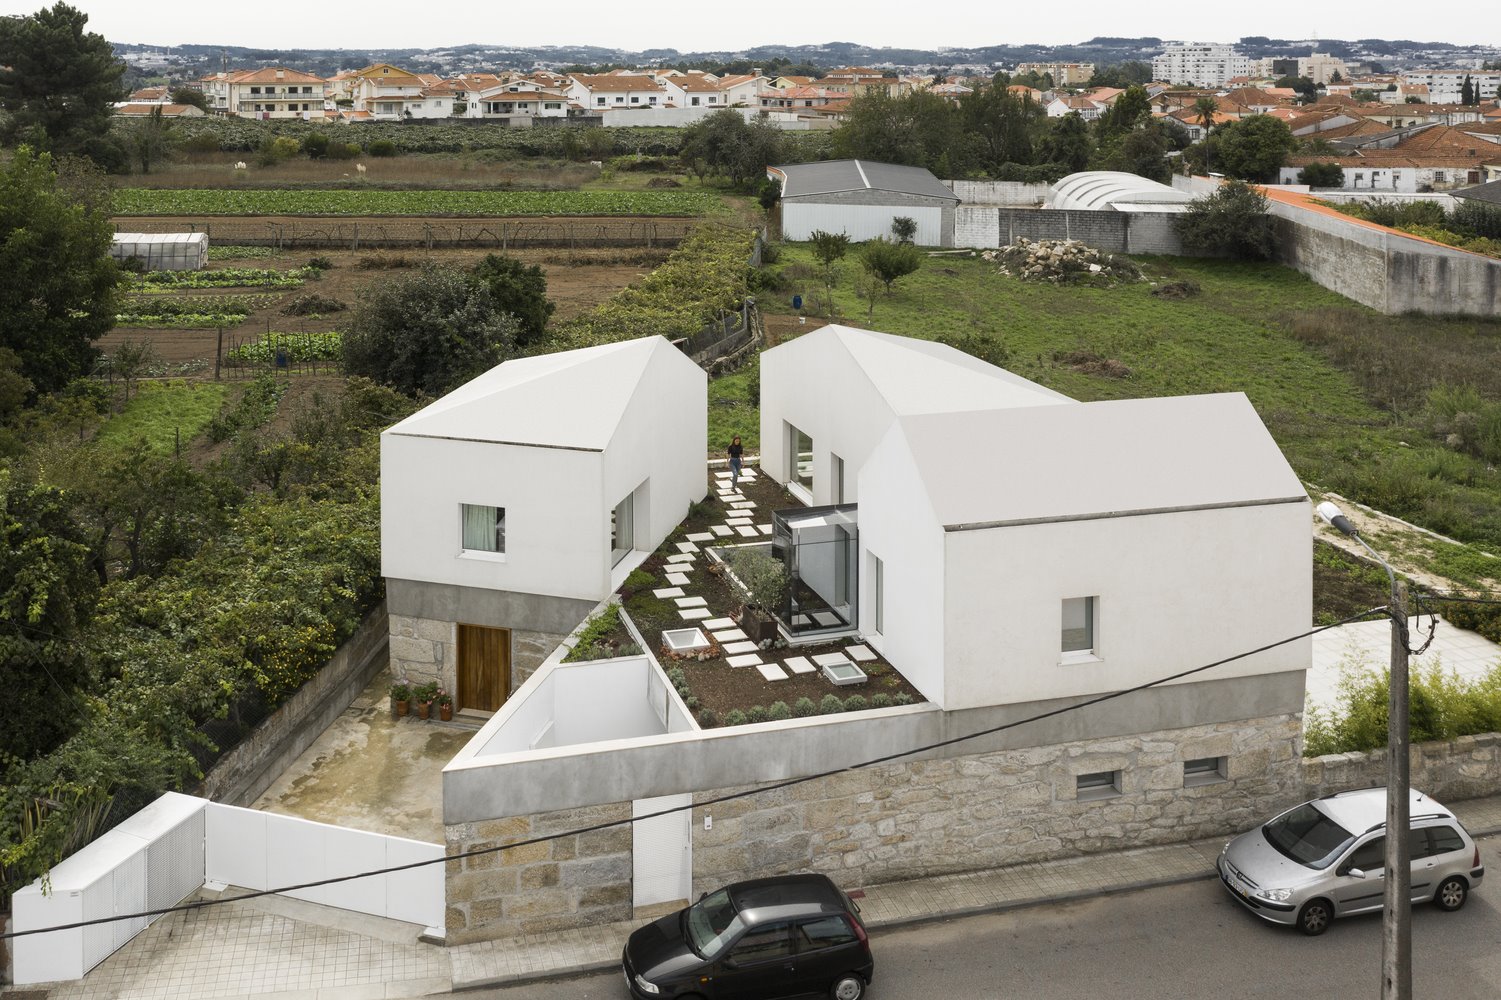 Casa en portugal de hormigon vista desde el cielo